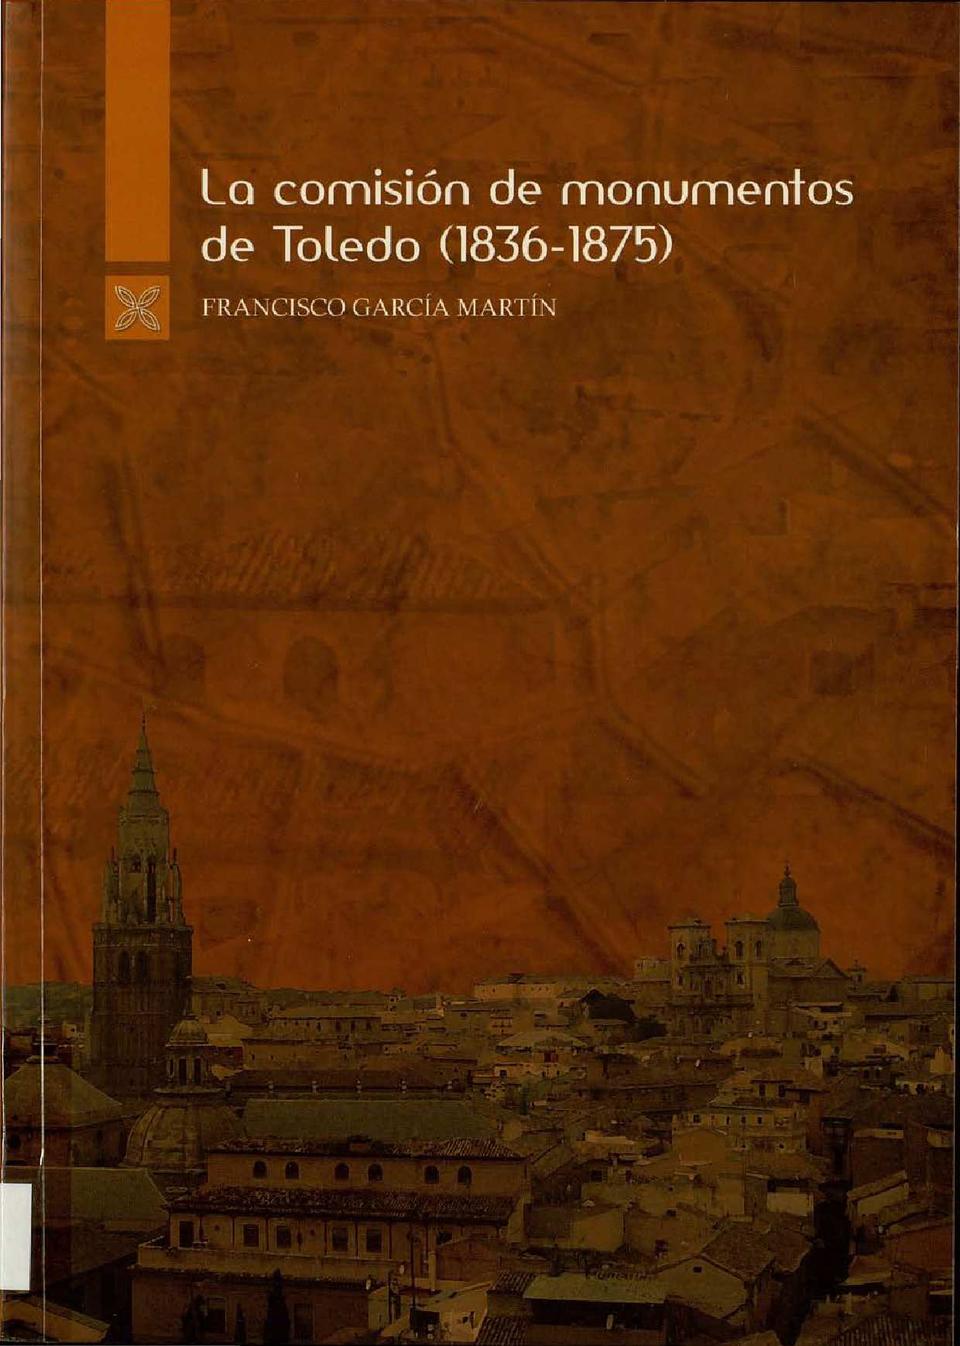 La Comisión de Monumentos de Toledo (1836-1875) / Francisco García Martín.-. [Monografía]